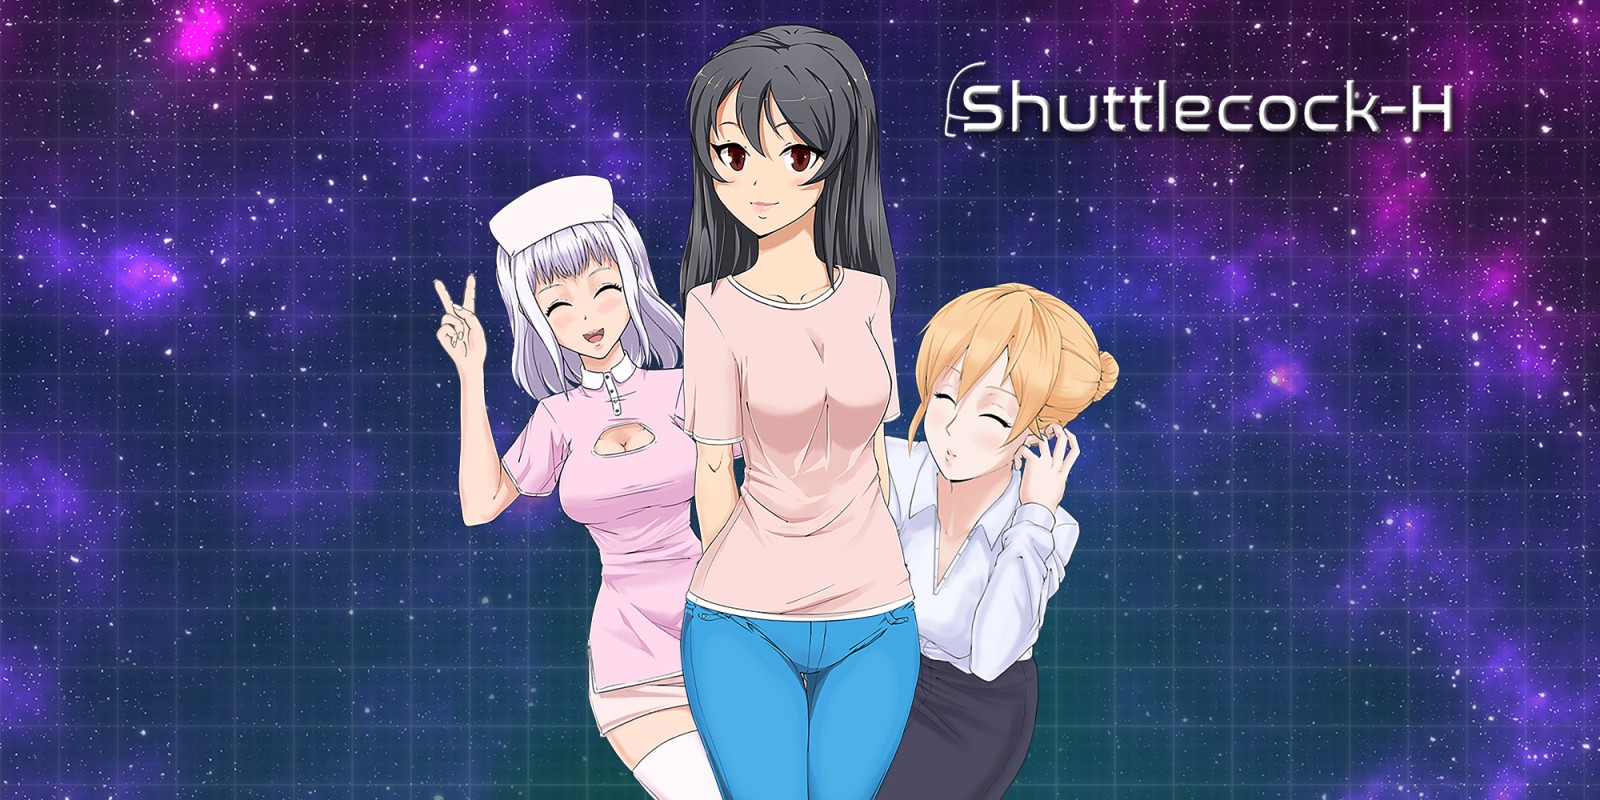 Shuttlecock-H